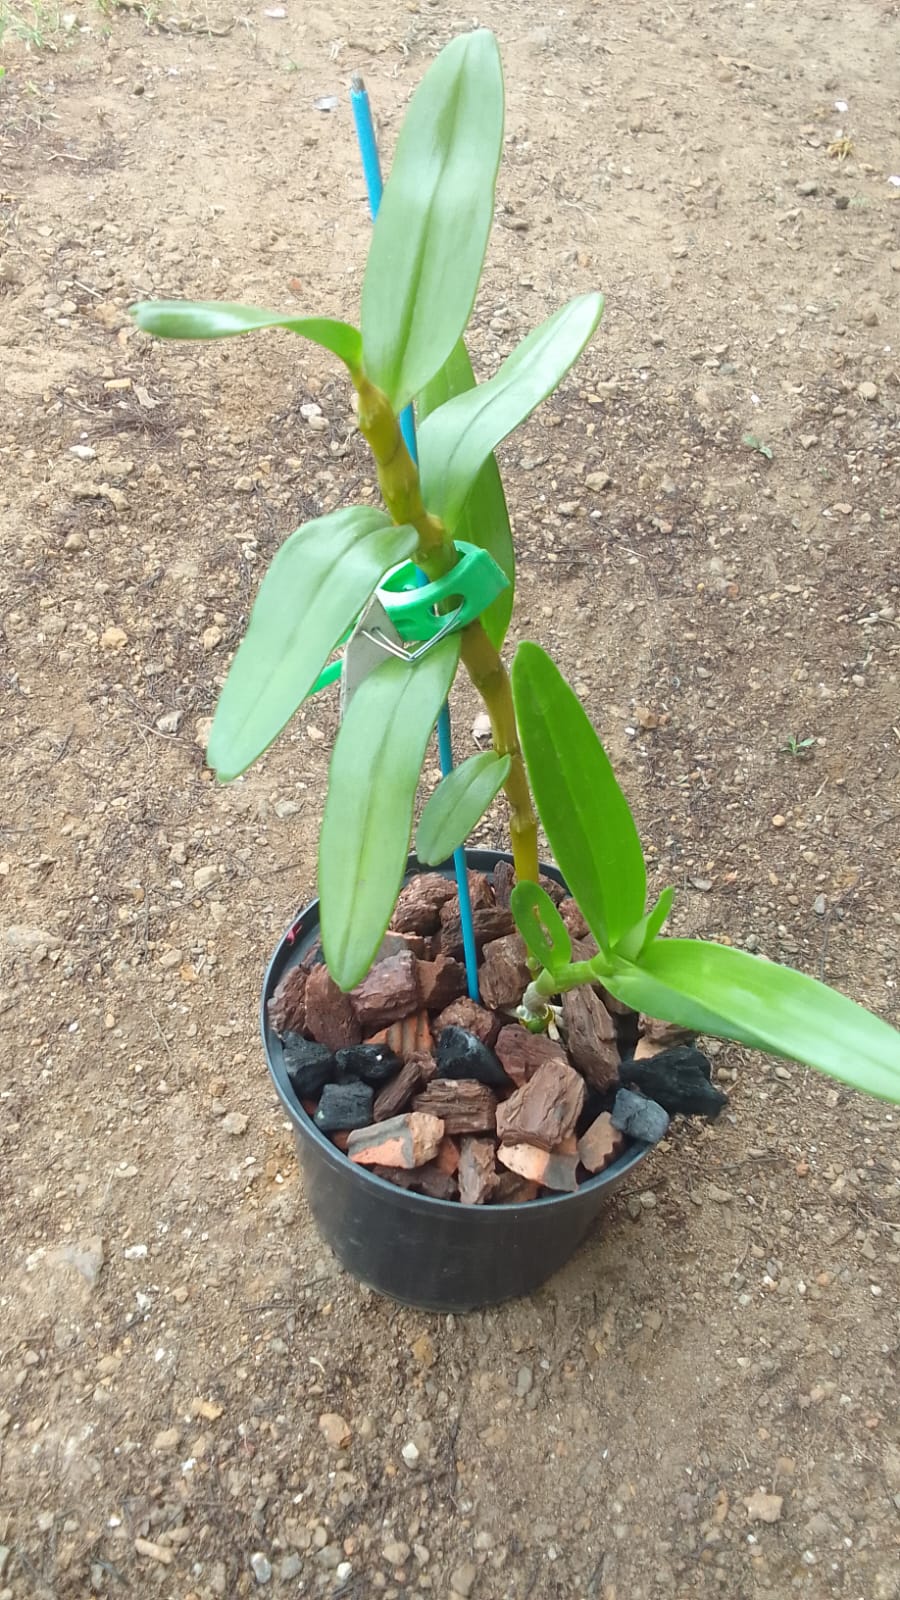 Nuestras orquideas Dendrobium: Crecimientos y Floraciones - Página 2 Whatsa24